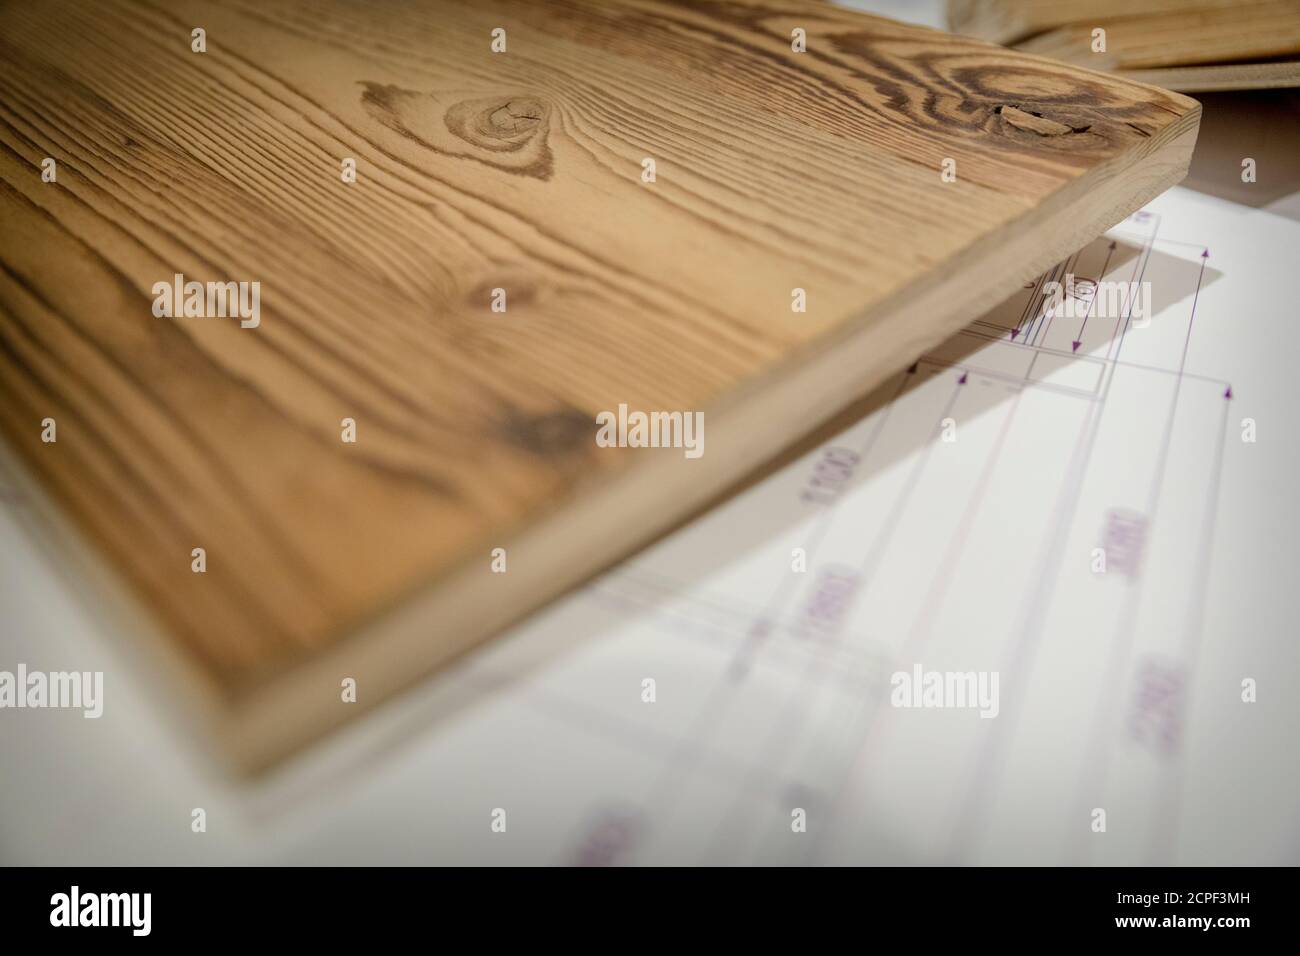 Die Zimmerei, die Holzmöbel, die technische Zeichnung und die Muster verschiedener Holzarten unter dem Schreibtisch Stockfoto